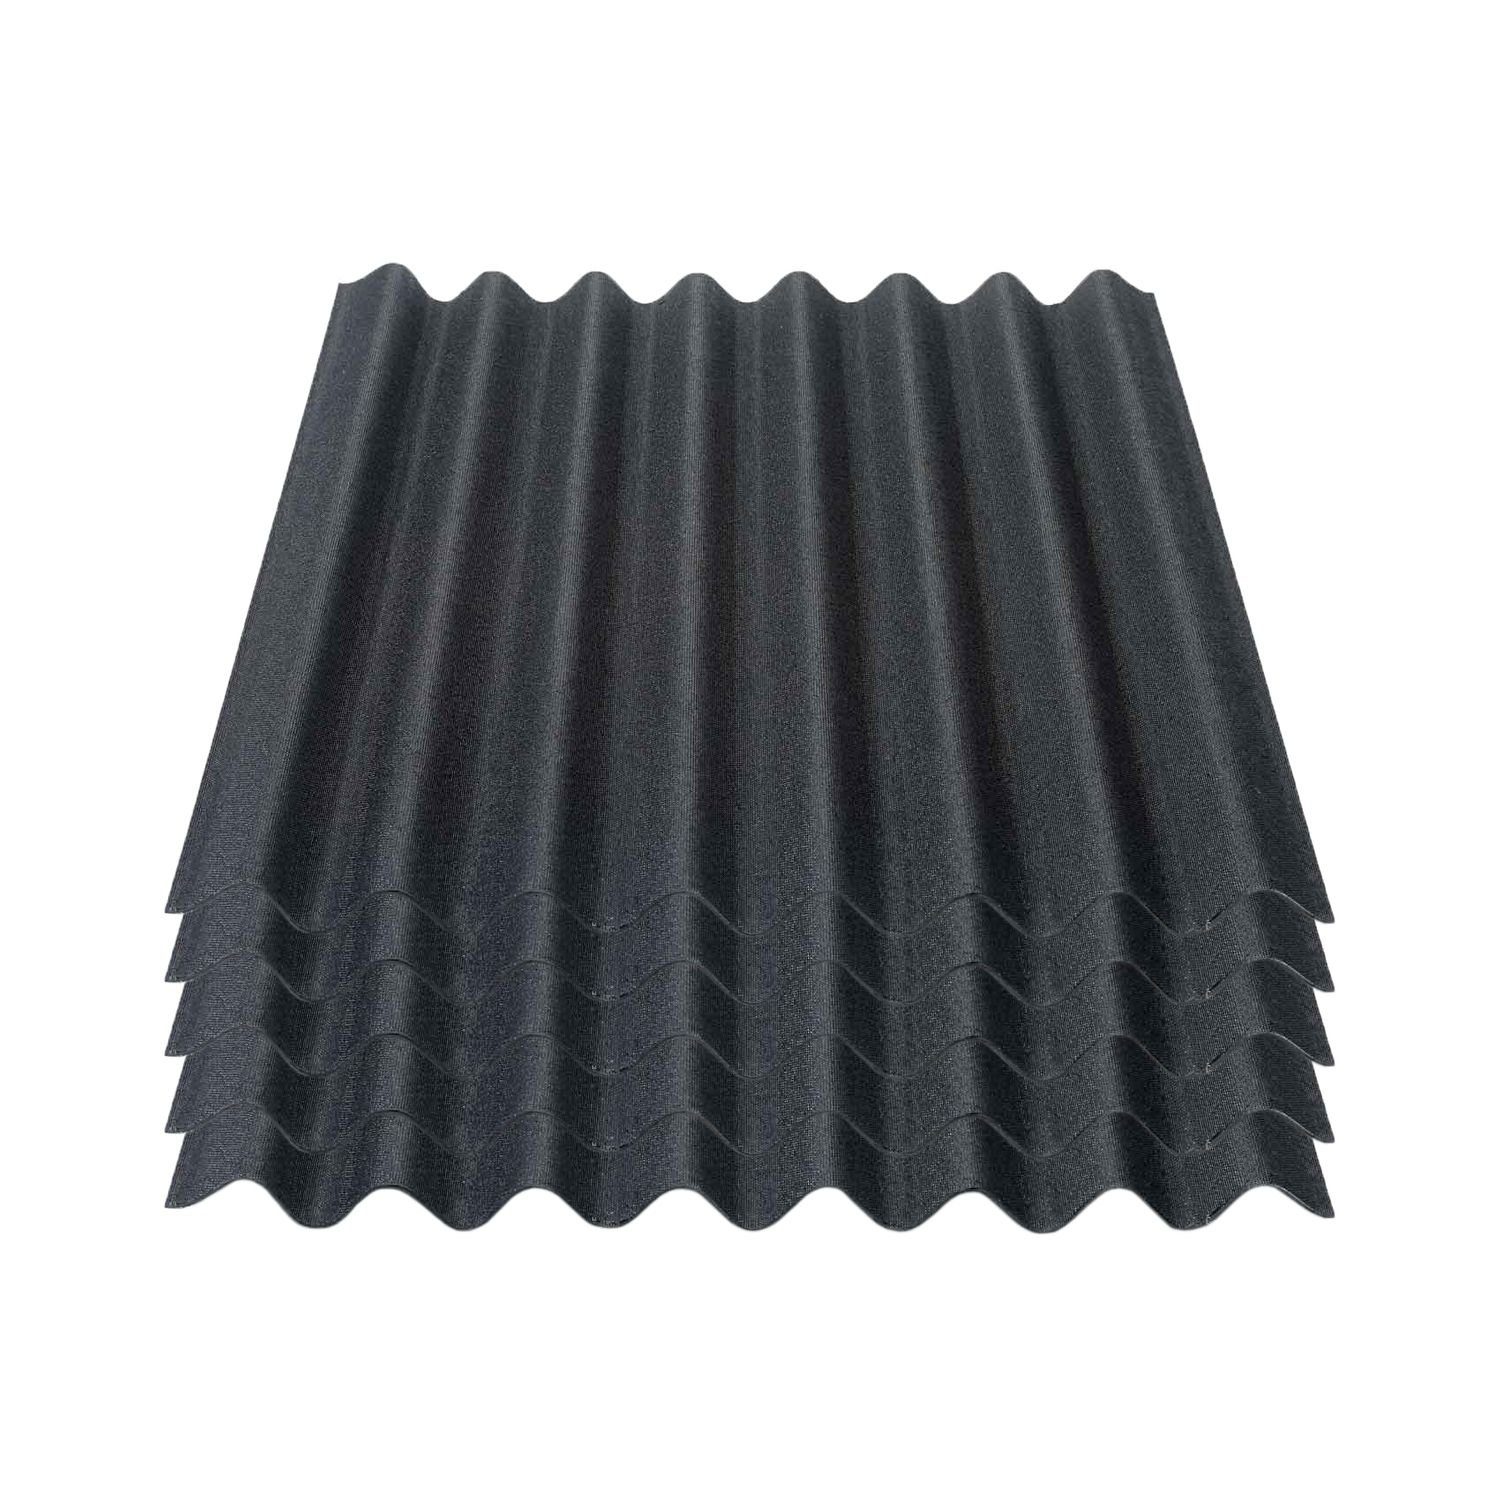 Onduline Dachpappe Onduline Easyline Dachplatte Wandplatte Bitumenwellplatten Wellplatte 5x0,76m² - schwarz, wellig, 3.8 m² pro Paket, (5-St)